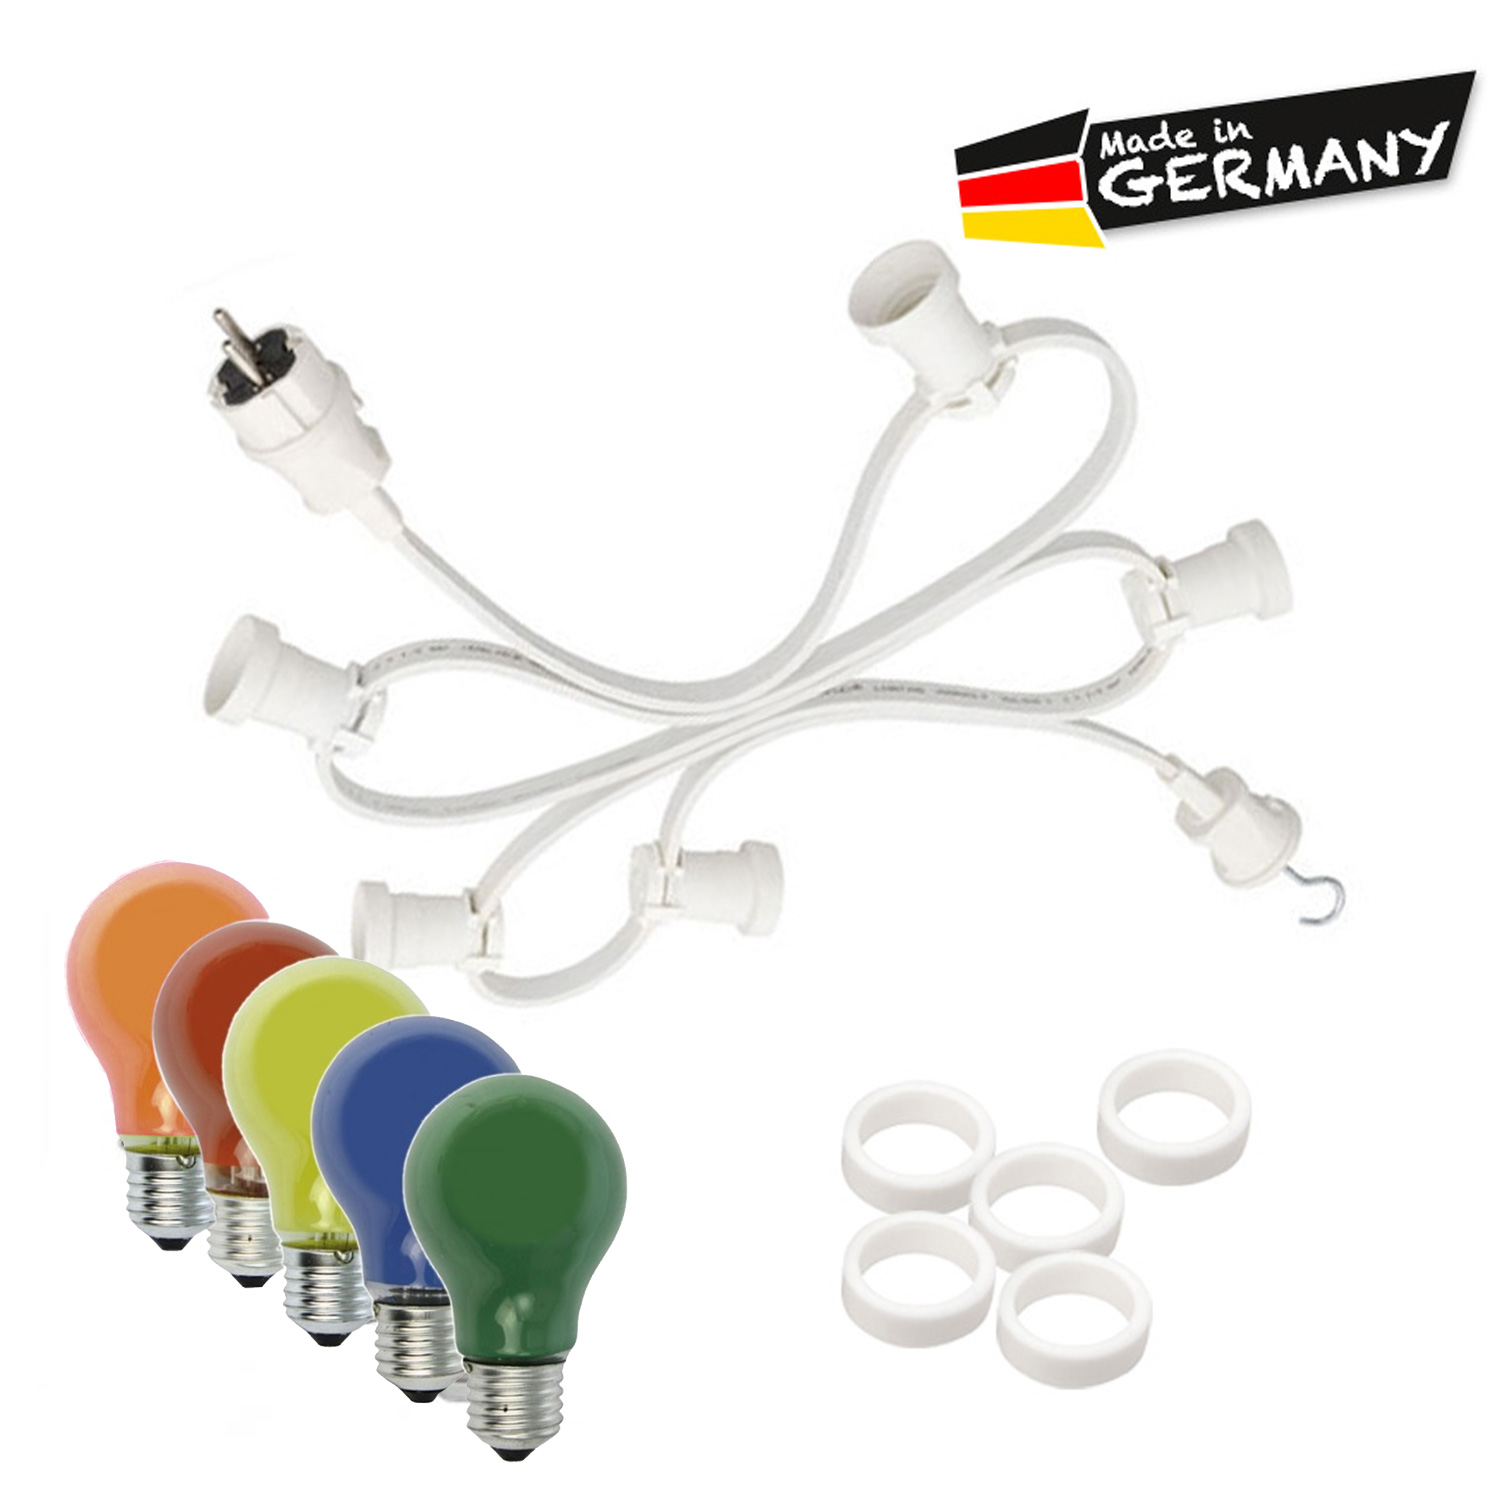 Illu-/Partylichterkette 10m - Außenlichterkette weiß - Made in Germany - 30 x bunte 25W Glühlampen